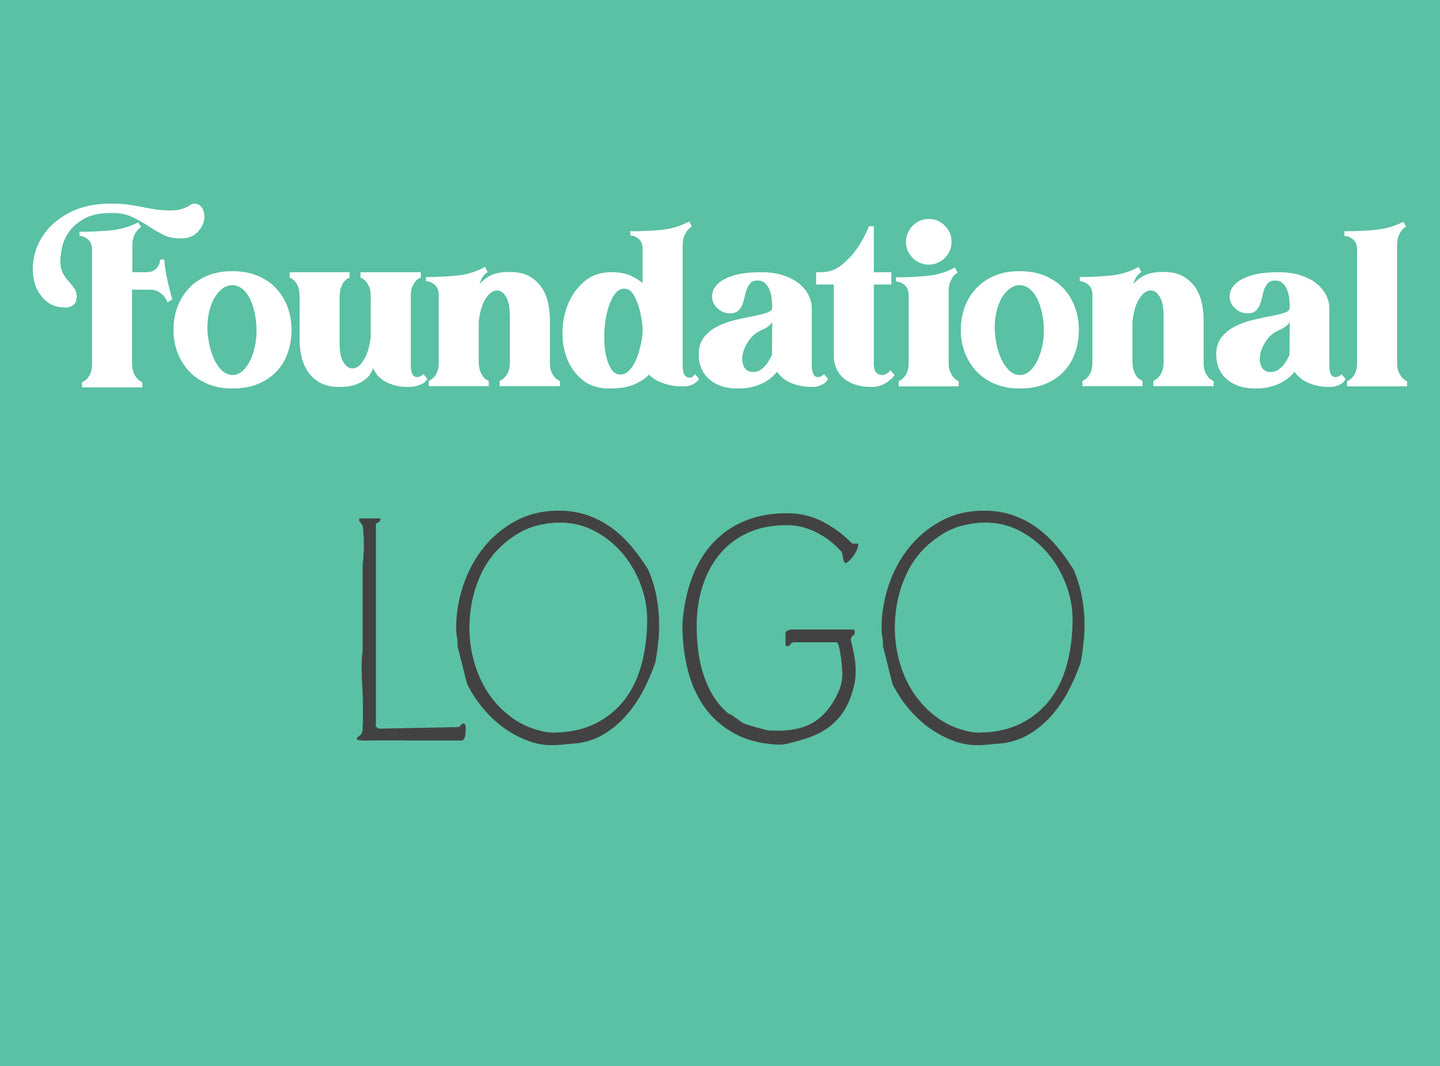 Foundational Logo Design